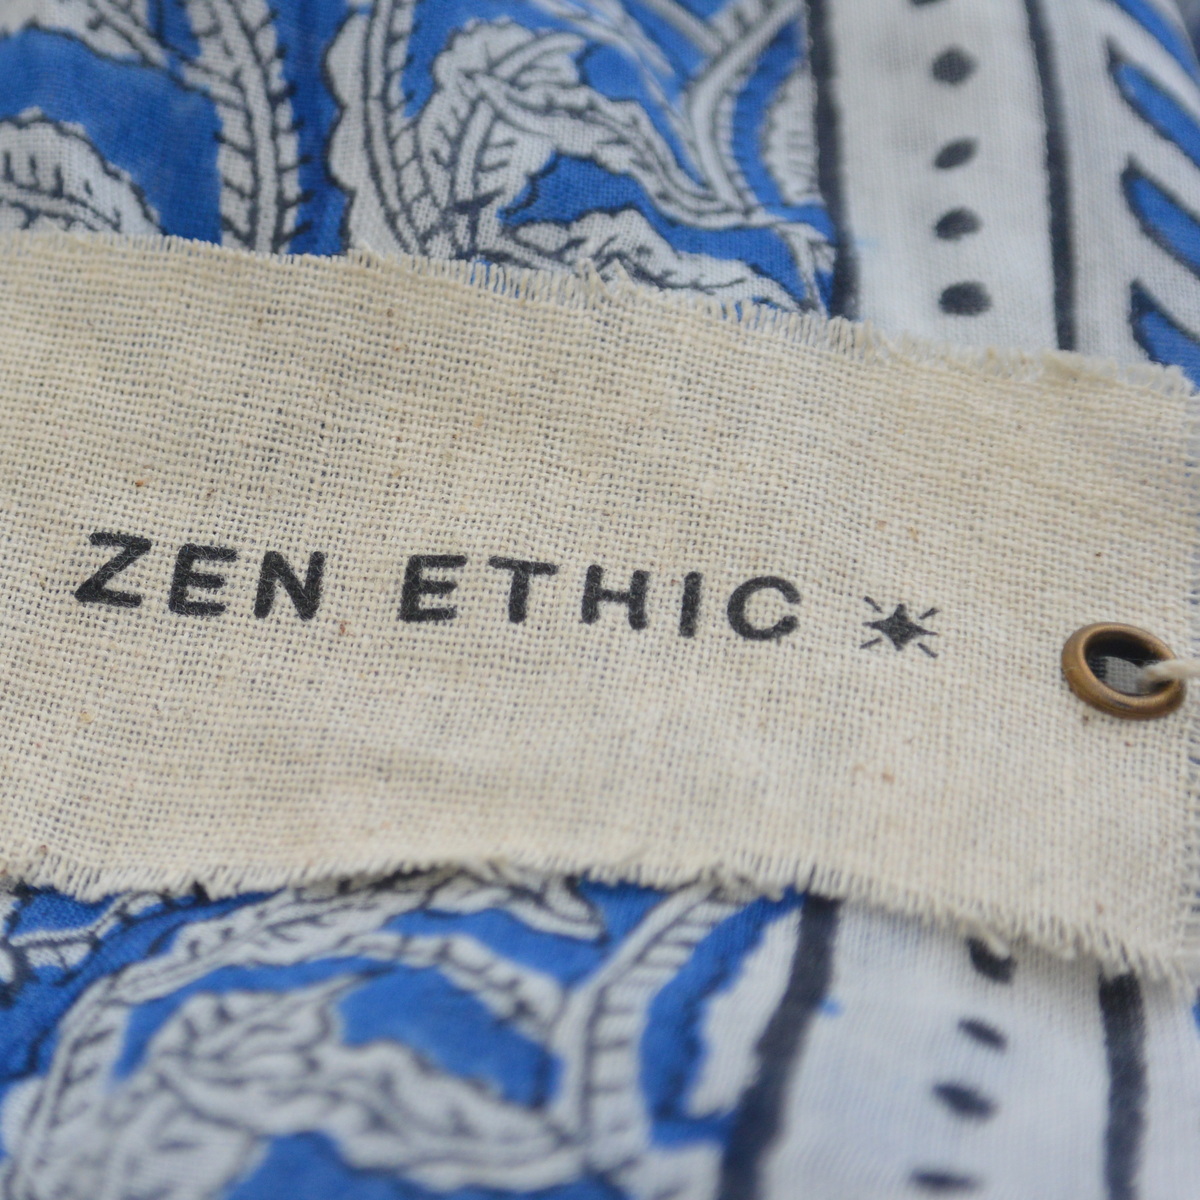 foulard zen ethic etole-blockprint-leaf-100-coton-110x180-cm une idee cadeau chez ugo et lea   (1)